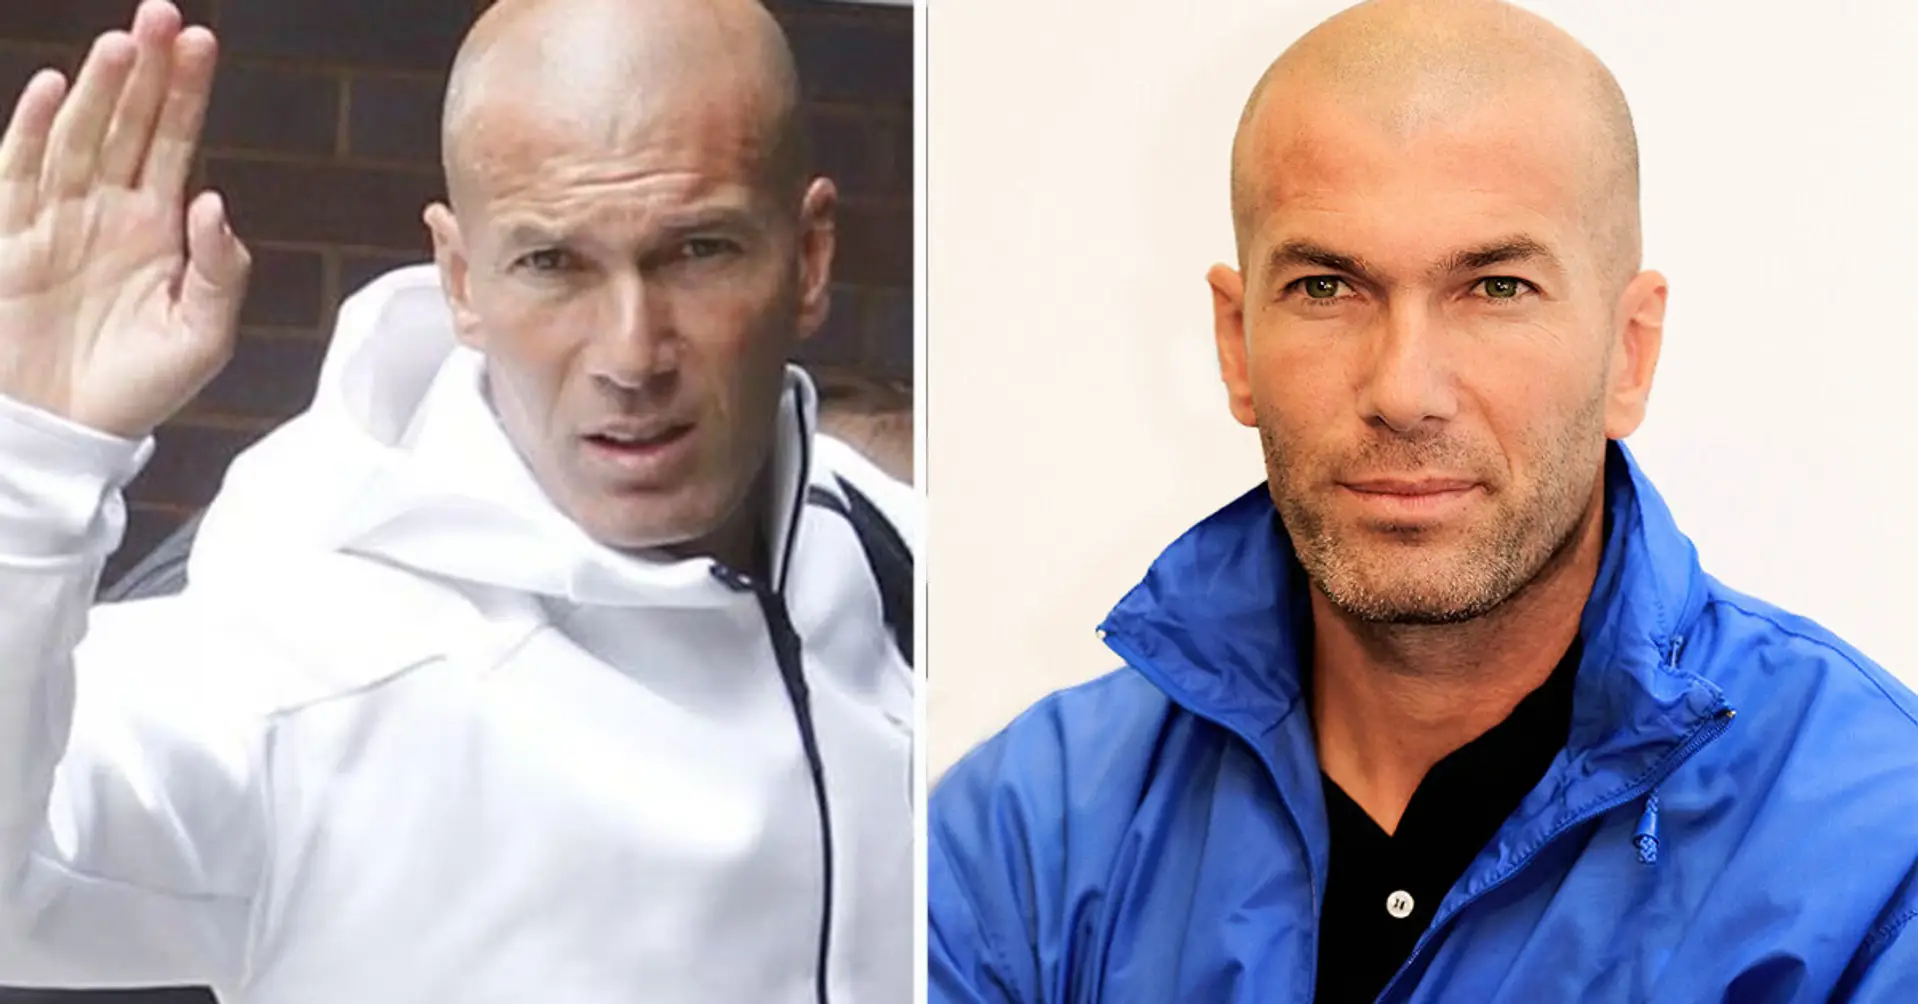 Zinedine Zidane - Wikipedia